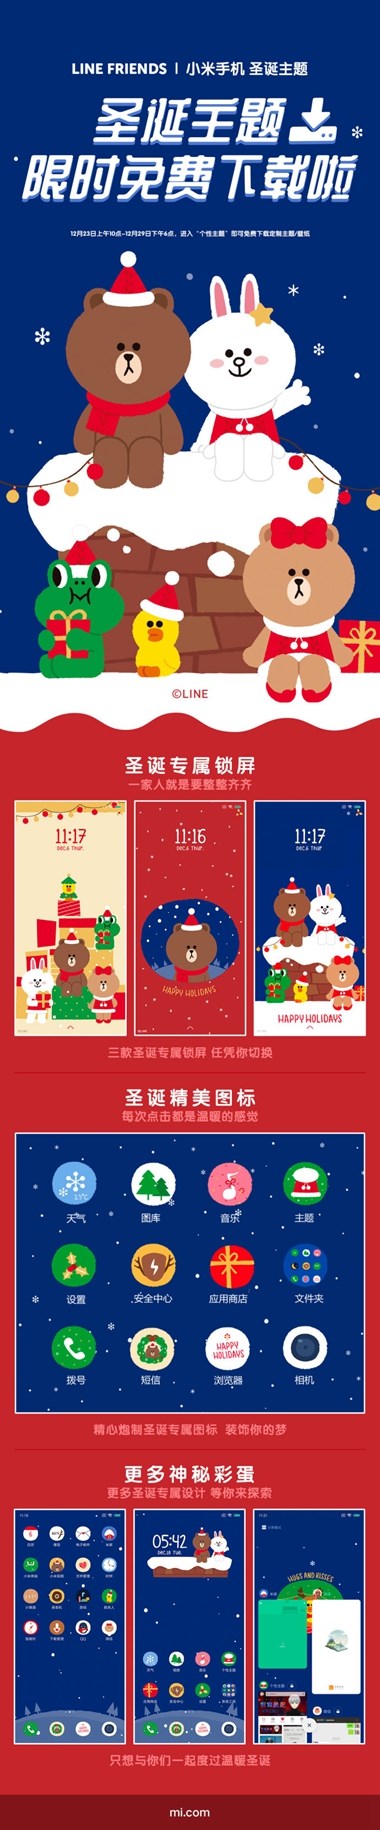 手机怎么格式化，小米和 LINE FRIENDS 互助推出圣诞主题：限时免费下载